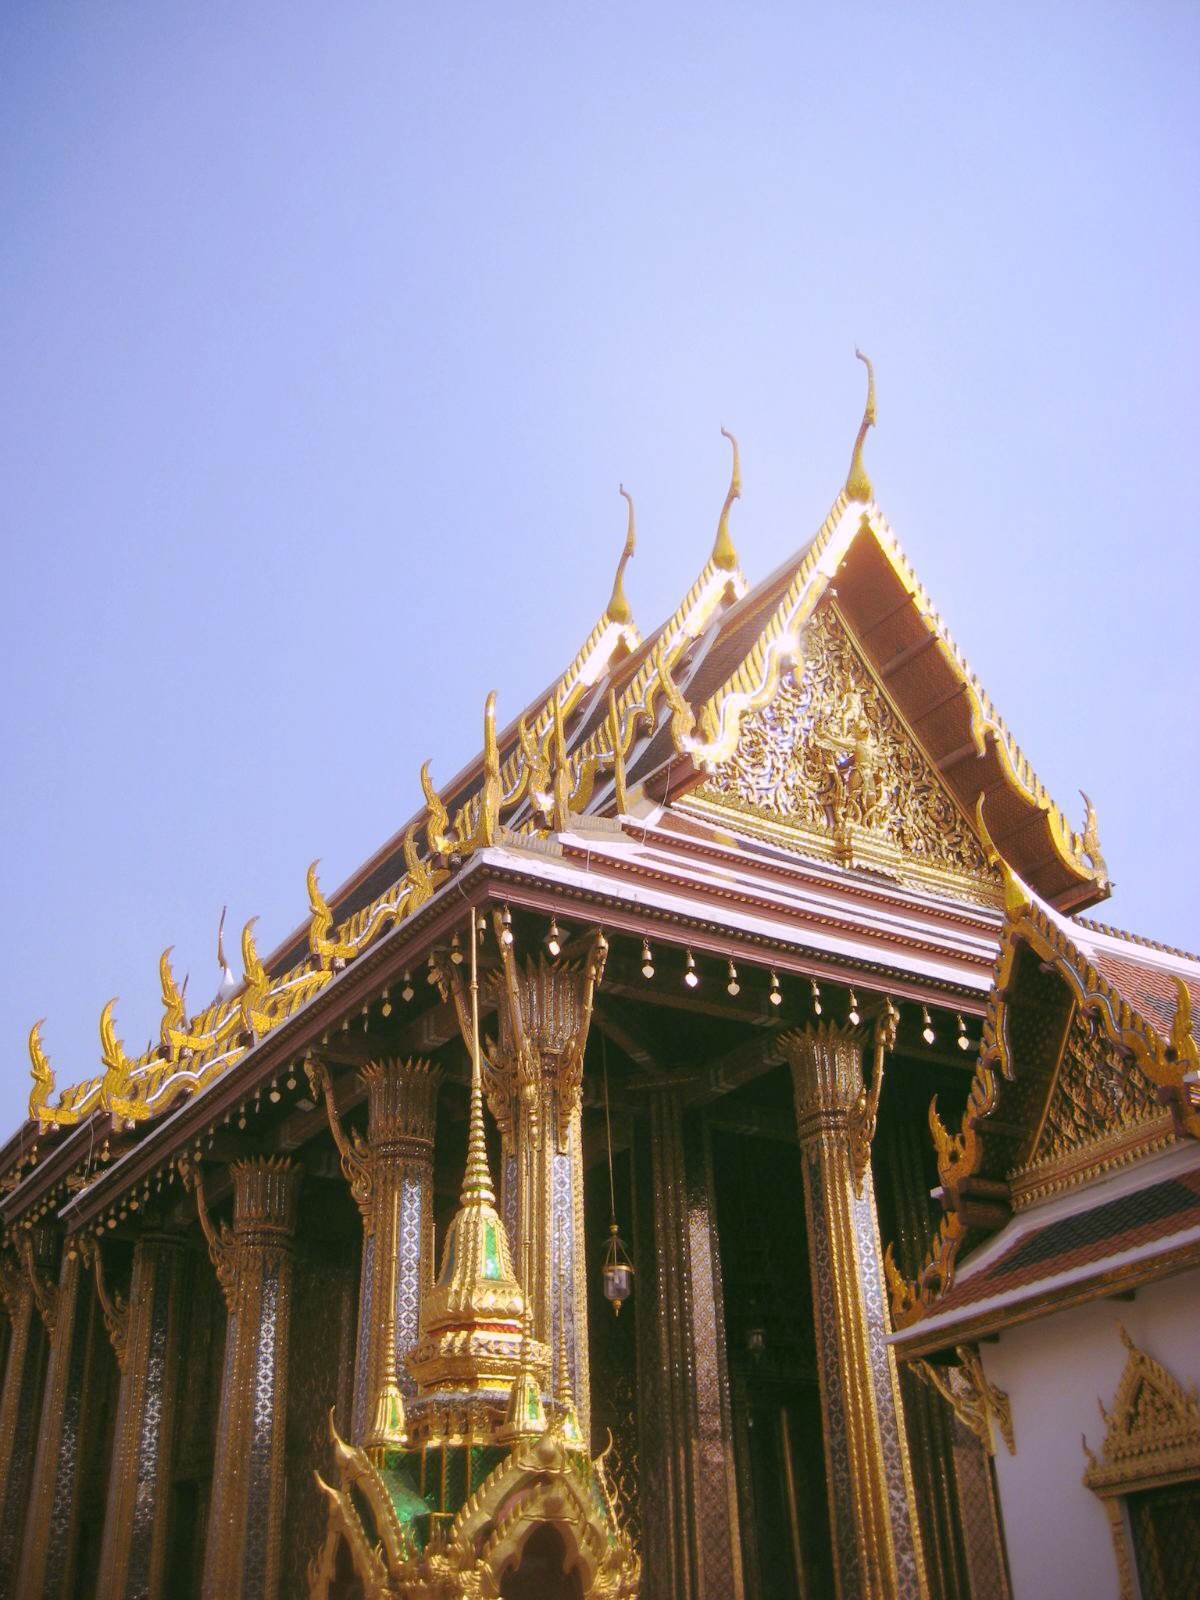 泰国寺庙尤为多,遍地的金碧辉煌成为了泰国的主色调,令人沉浸在金色的